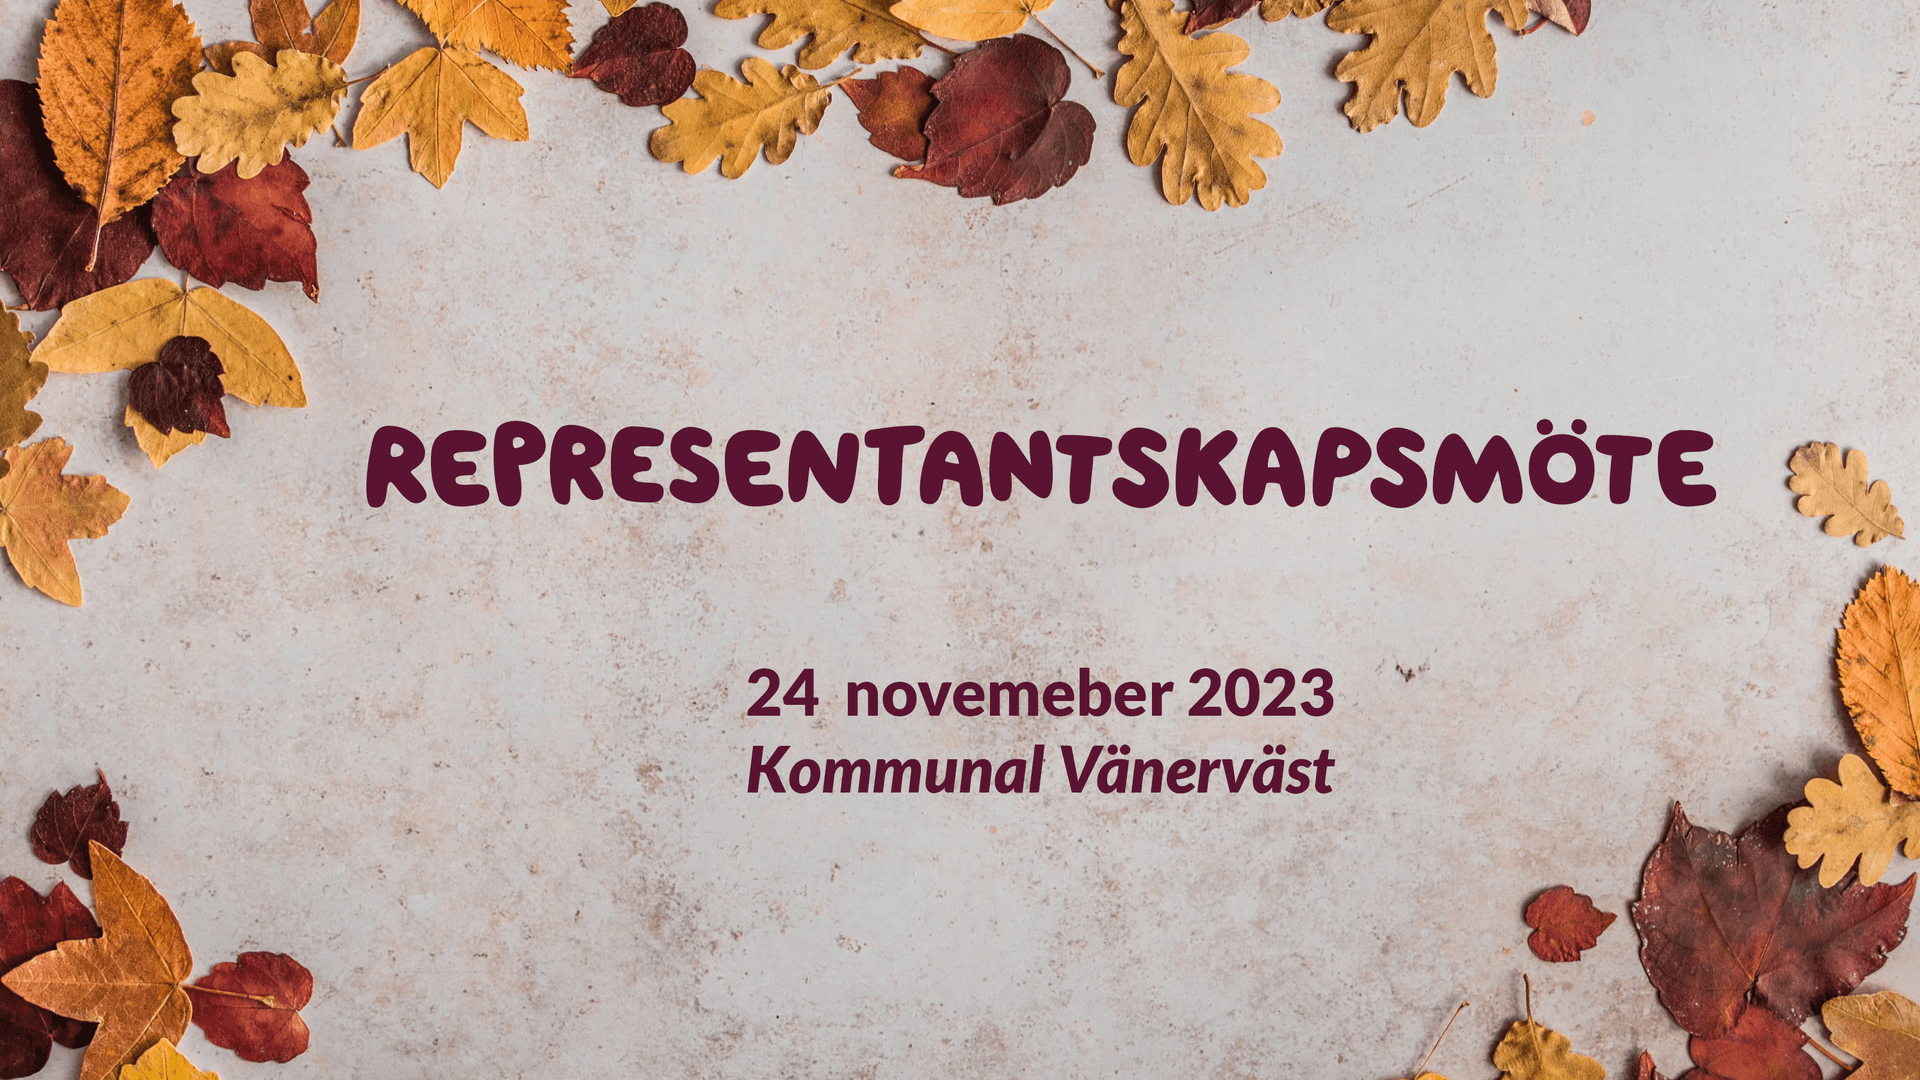 Representantskapsmöte Kommunal Vänerväst 2023